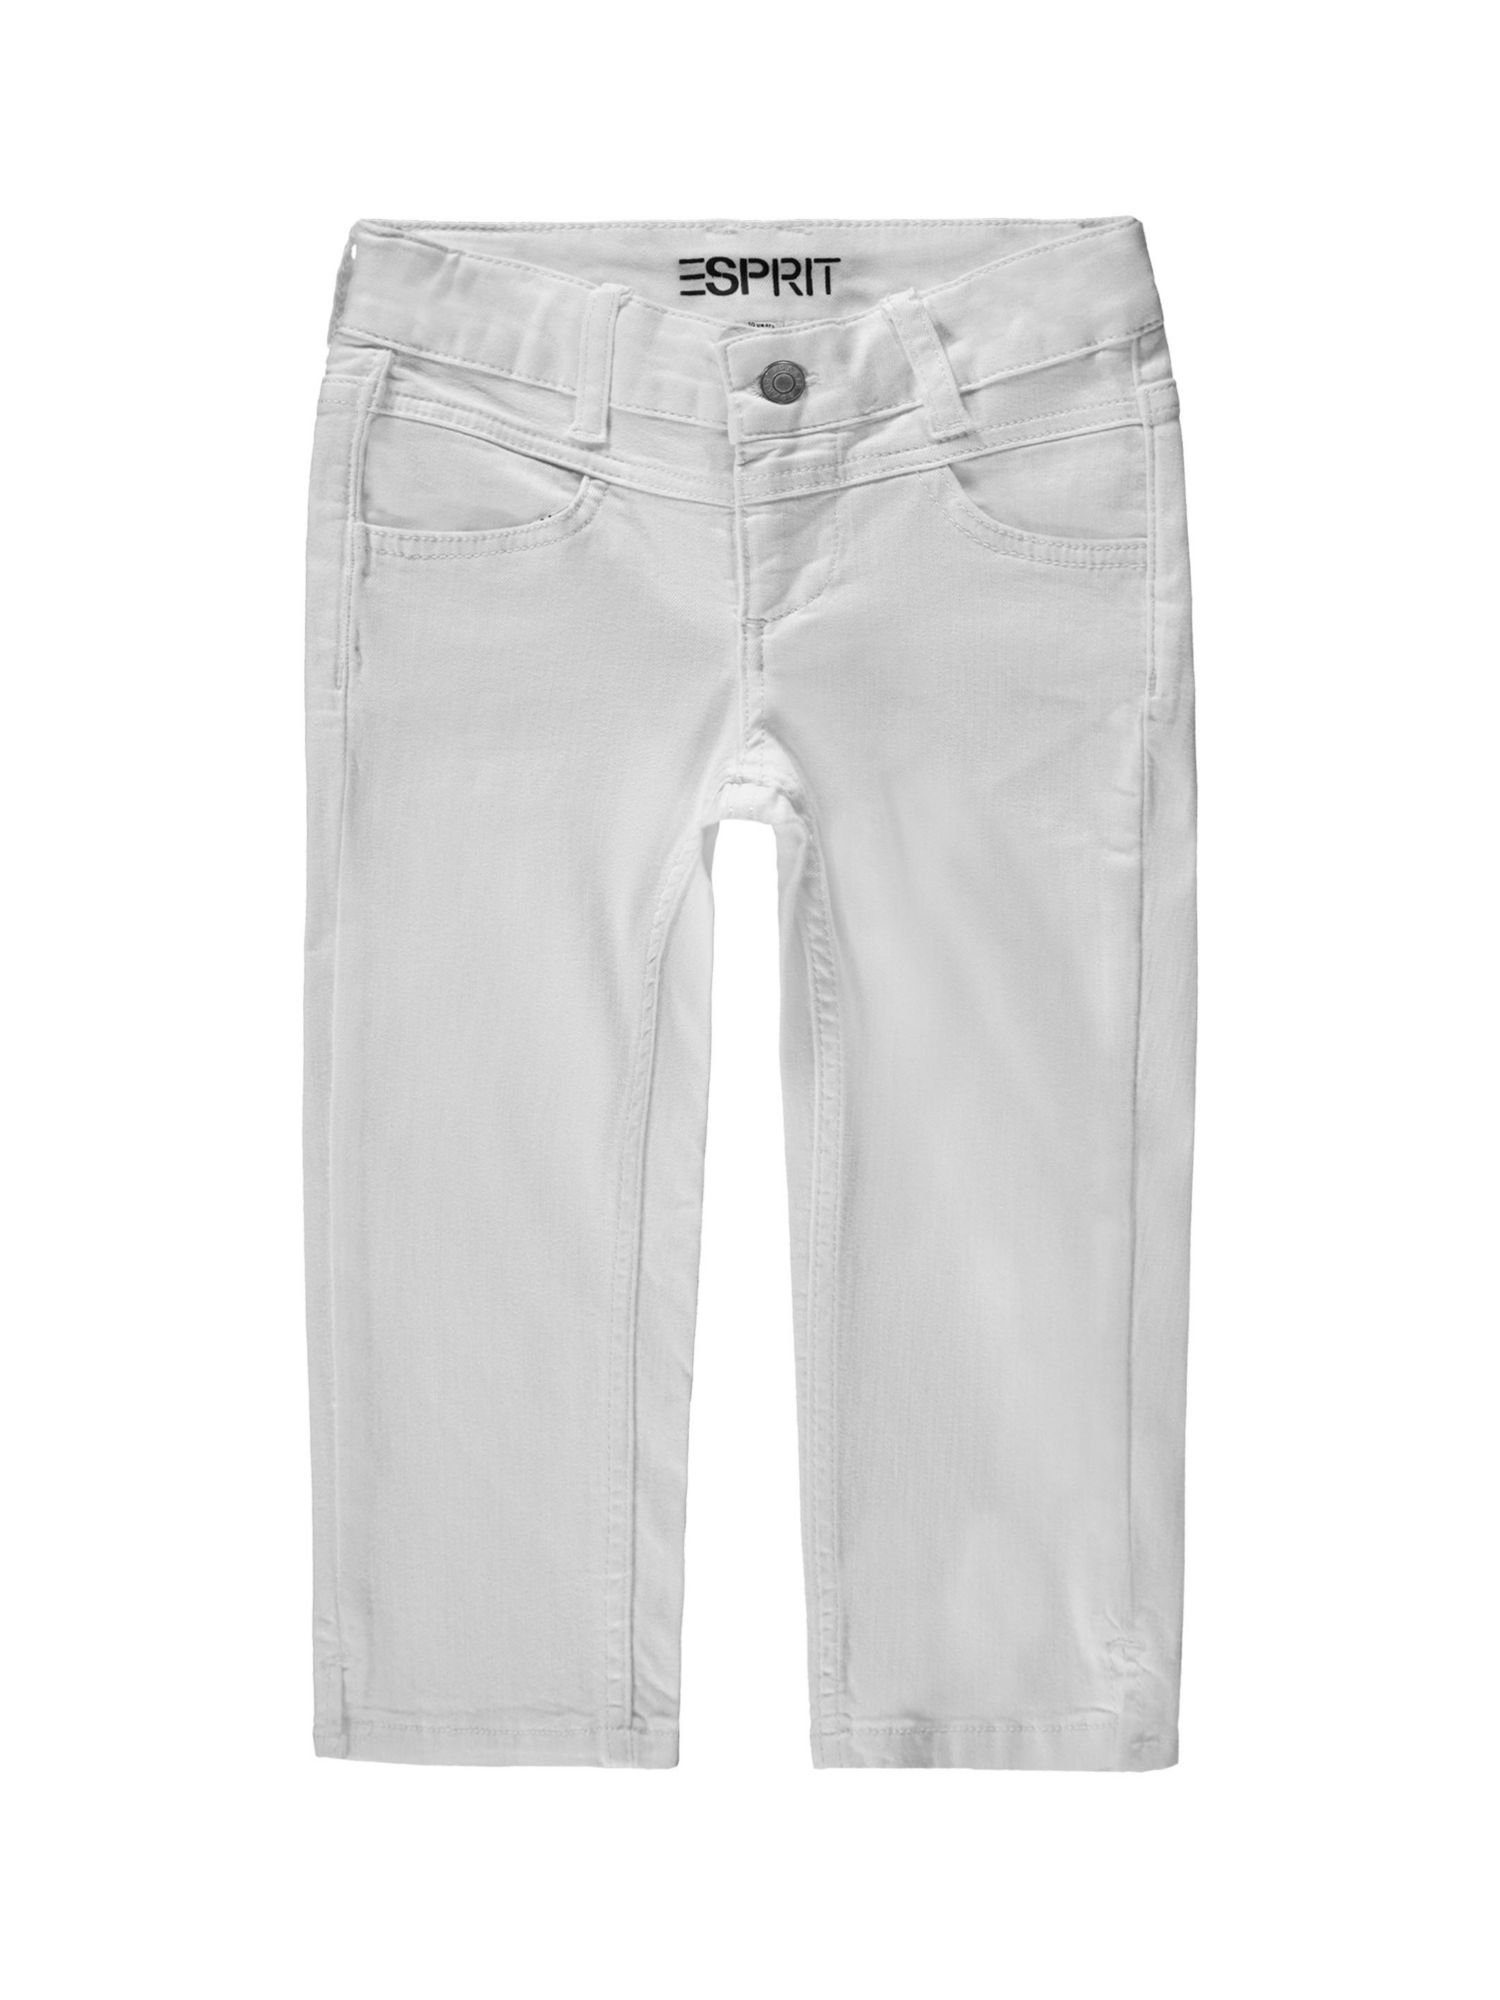 Esprit Jeansshorts Recycelt: Capri-Jeans mit Verstellbund WHITE